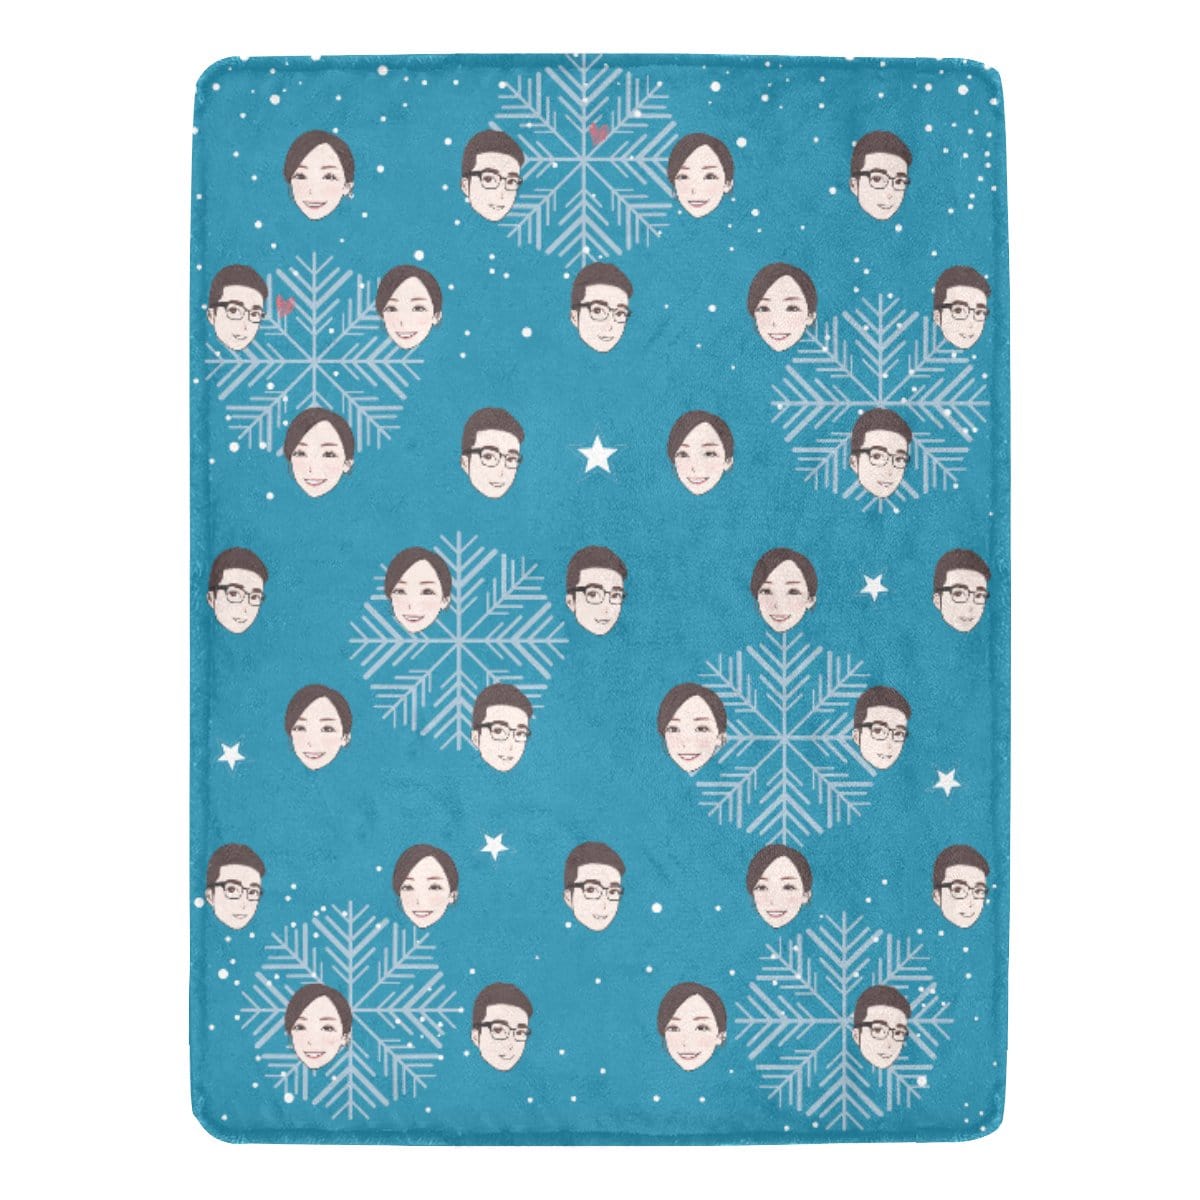 早鳥聖誕禮物定製-客製化插畫毛毯-雪花(藍)款式 Christmas Blanket (Blue)  Custom Blanket with tailor-made illustration. - HKGIFTFORU